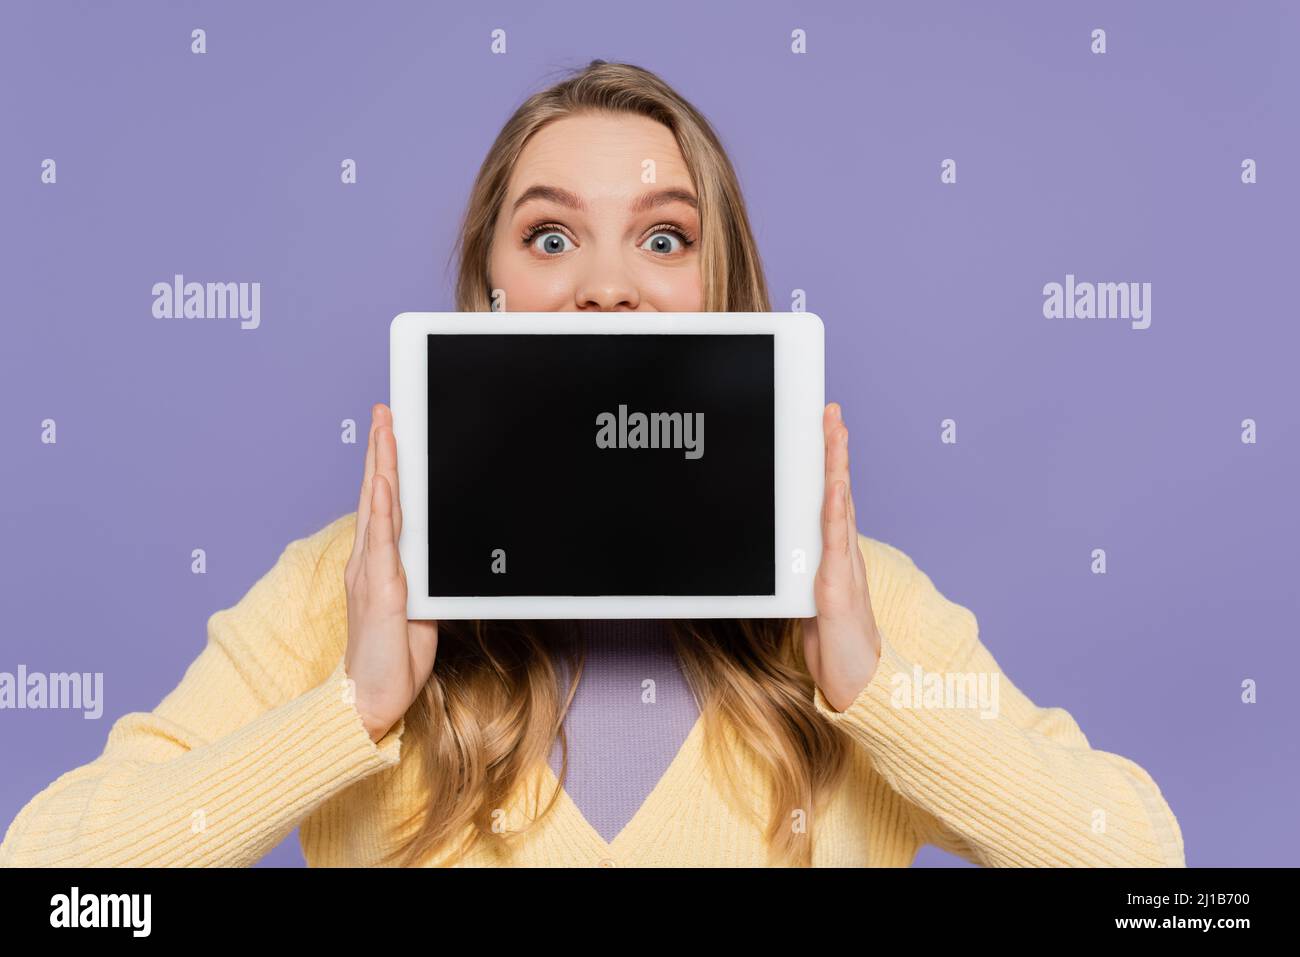 Junge Frau bedeckt den Mund und hält ein digitales Tablet mit einem leeren Bildschirm, der auf violett isoliert ist Stockfoto